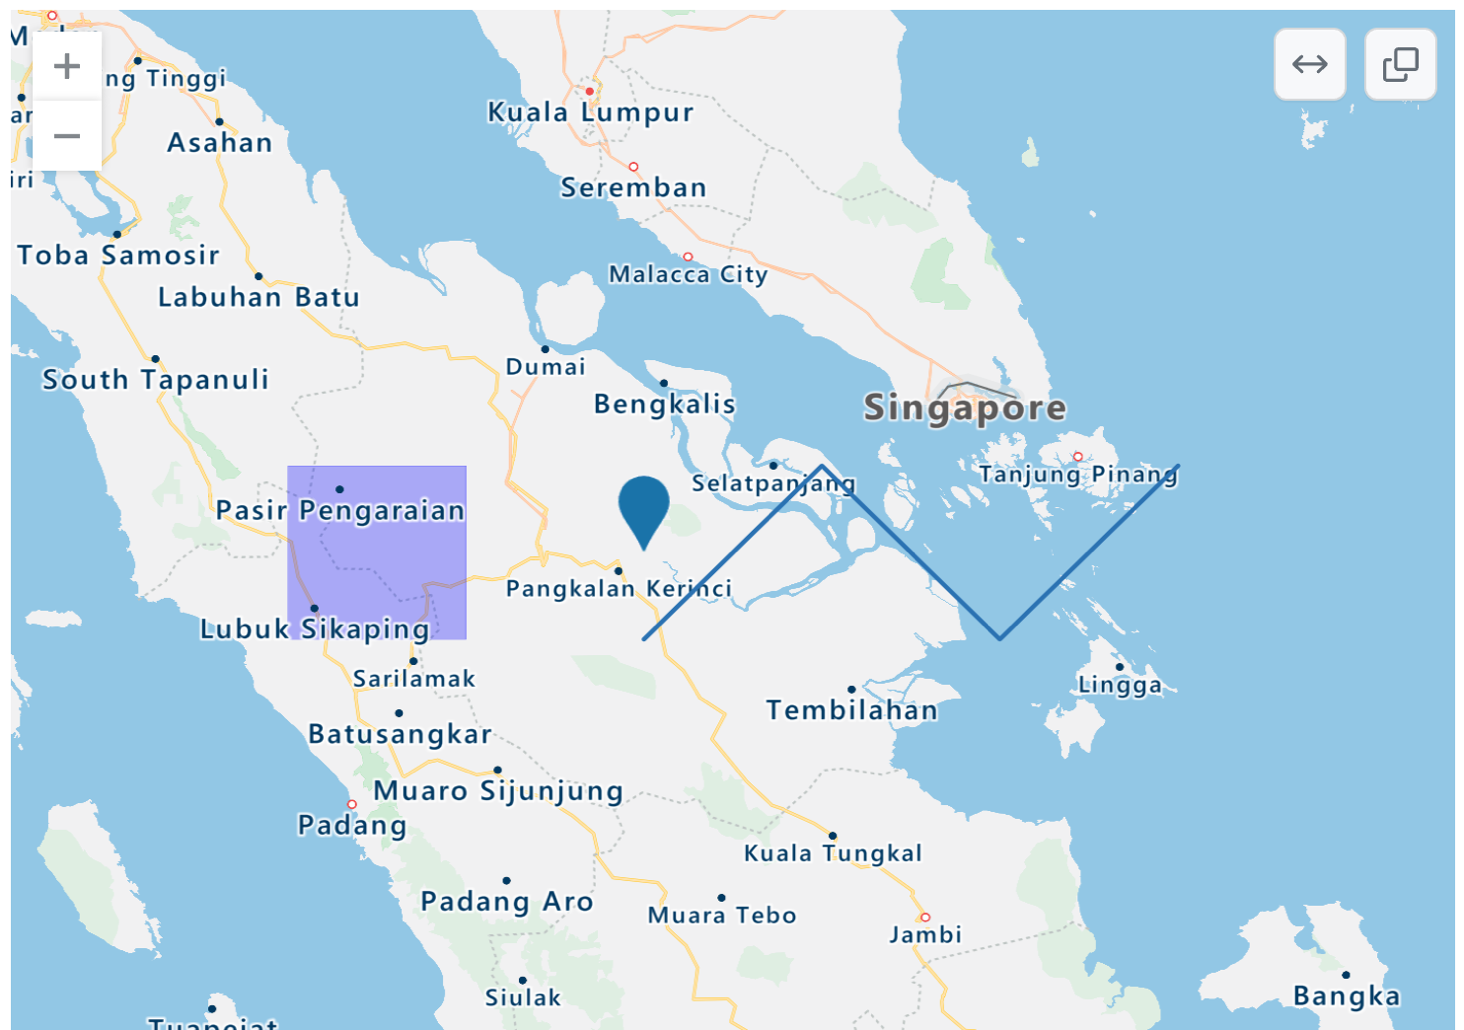 파란색 점, 보라색 사각형 오버레이 및 파란색 지그재그 선이 있는 서부 인도네시아, 싱가포르 및 말레이시아 일부의 렌더링된 TopoJSON 맵 스크린샷